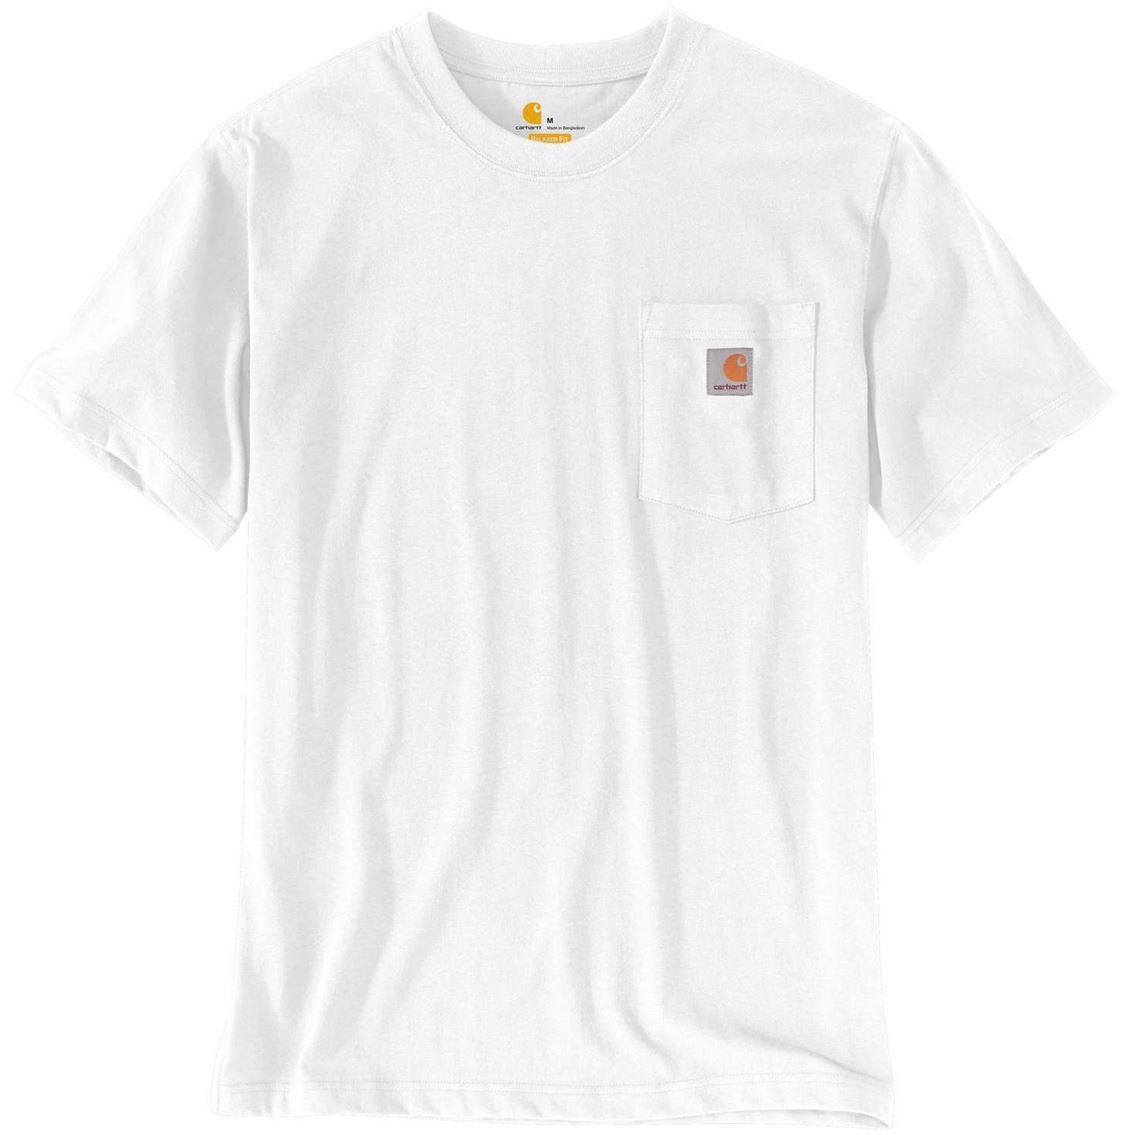 Carhartt Workwear Pocket T Shirt in Weiß für 13,95€ (statt 18€)   Prime